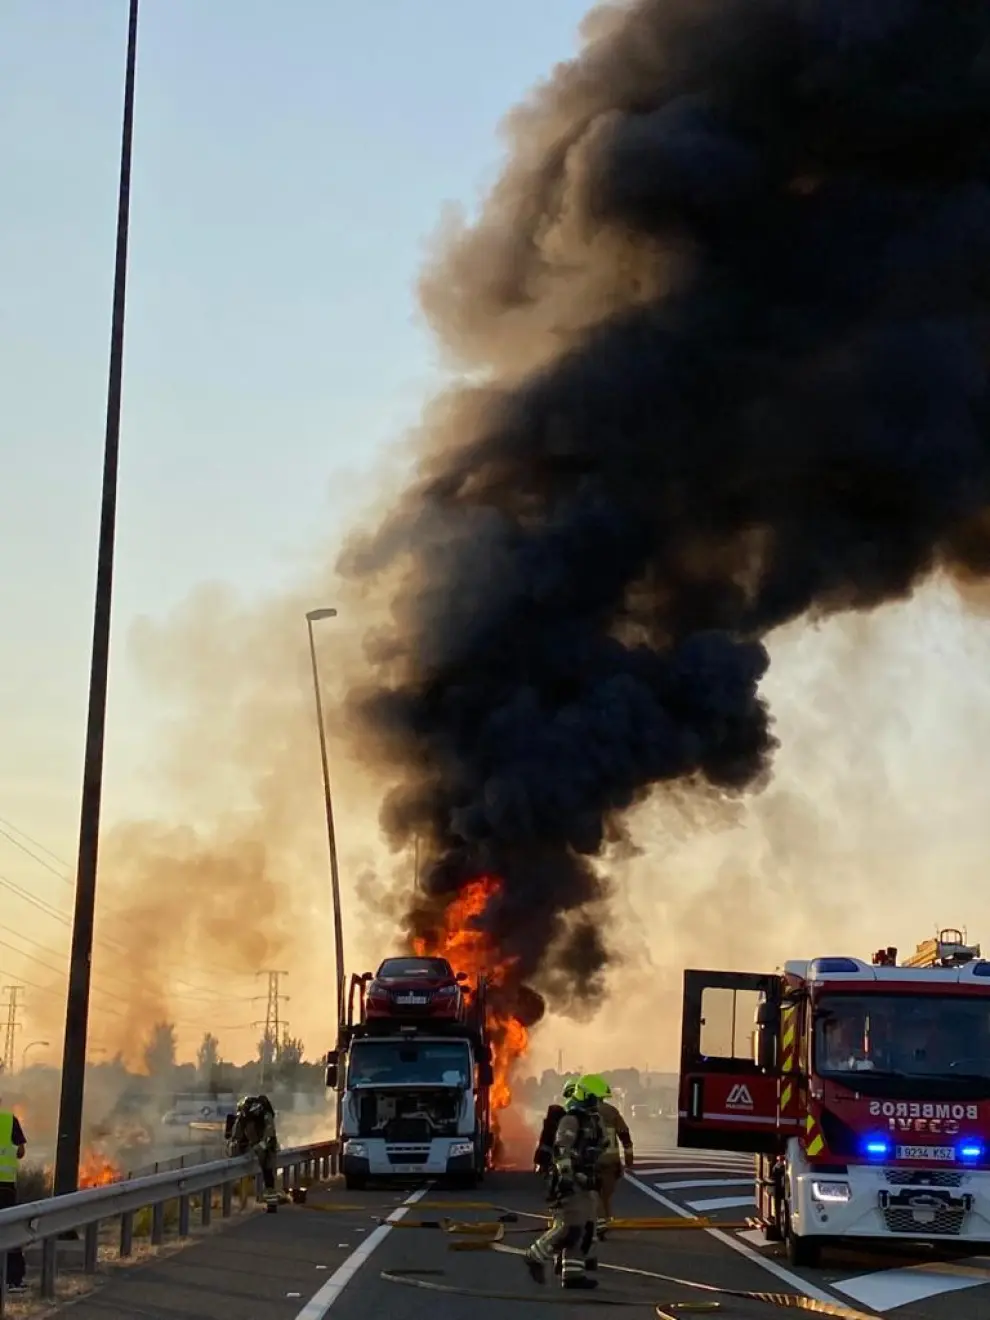 Un vehículo remolque porta-turismos nuevos ha ardido en la A-2 a la altura de Malpica